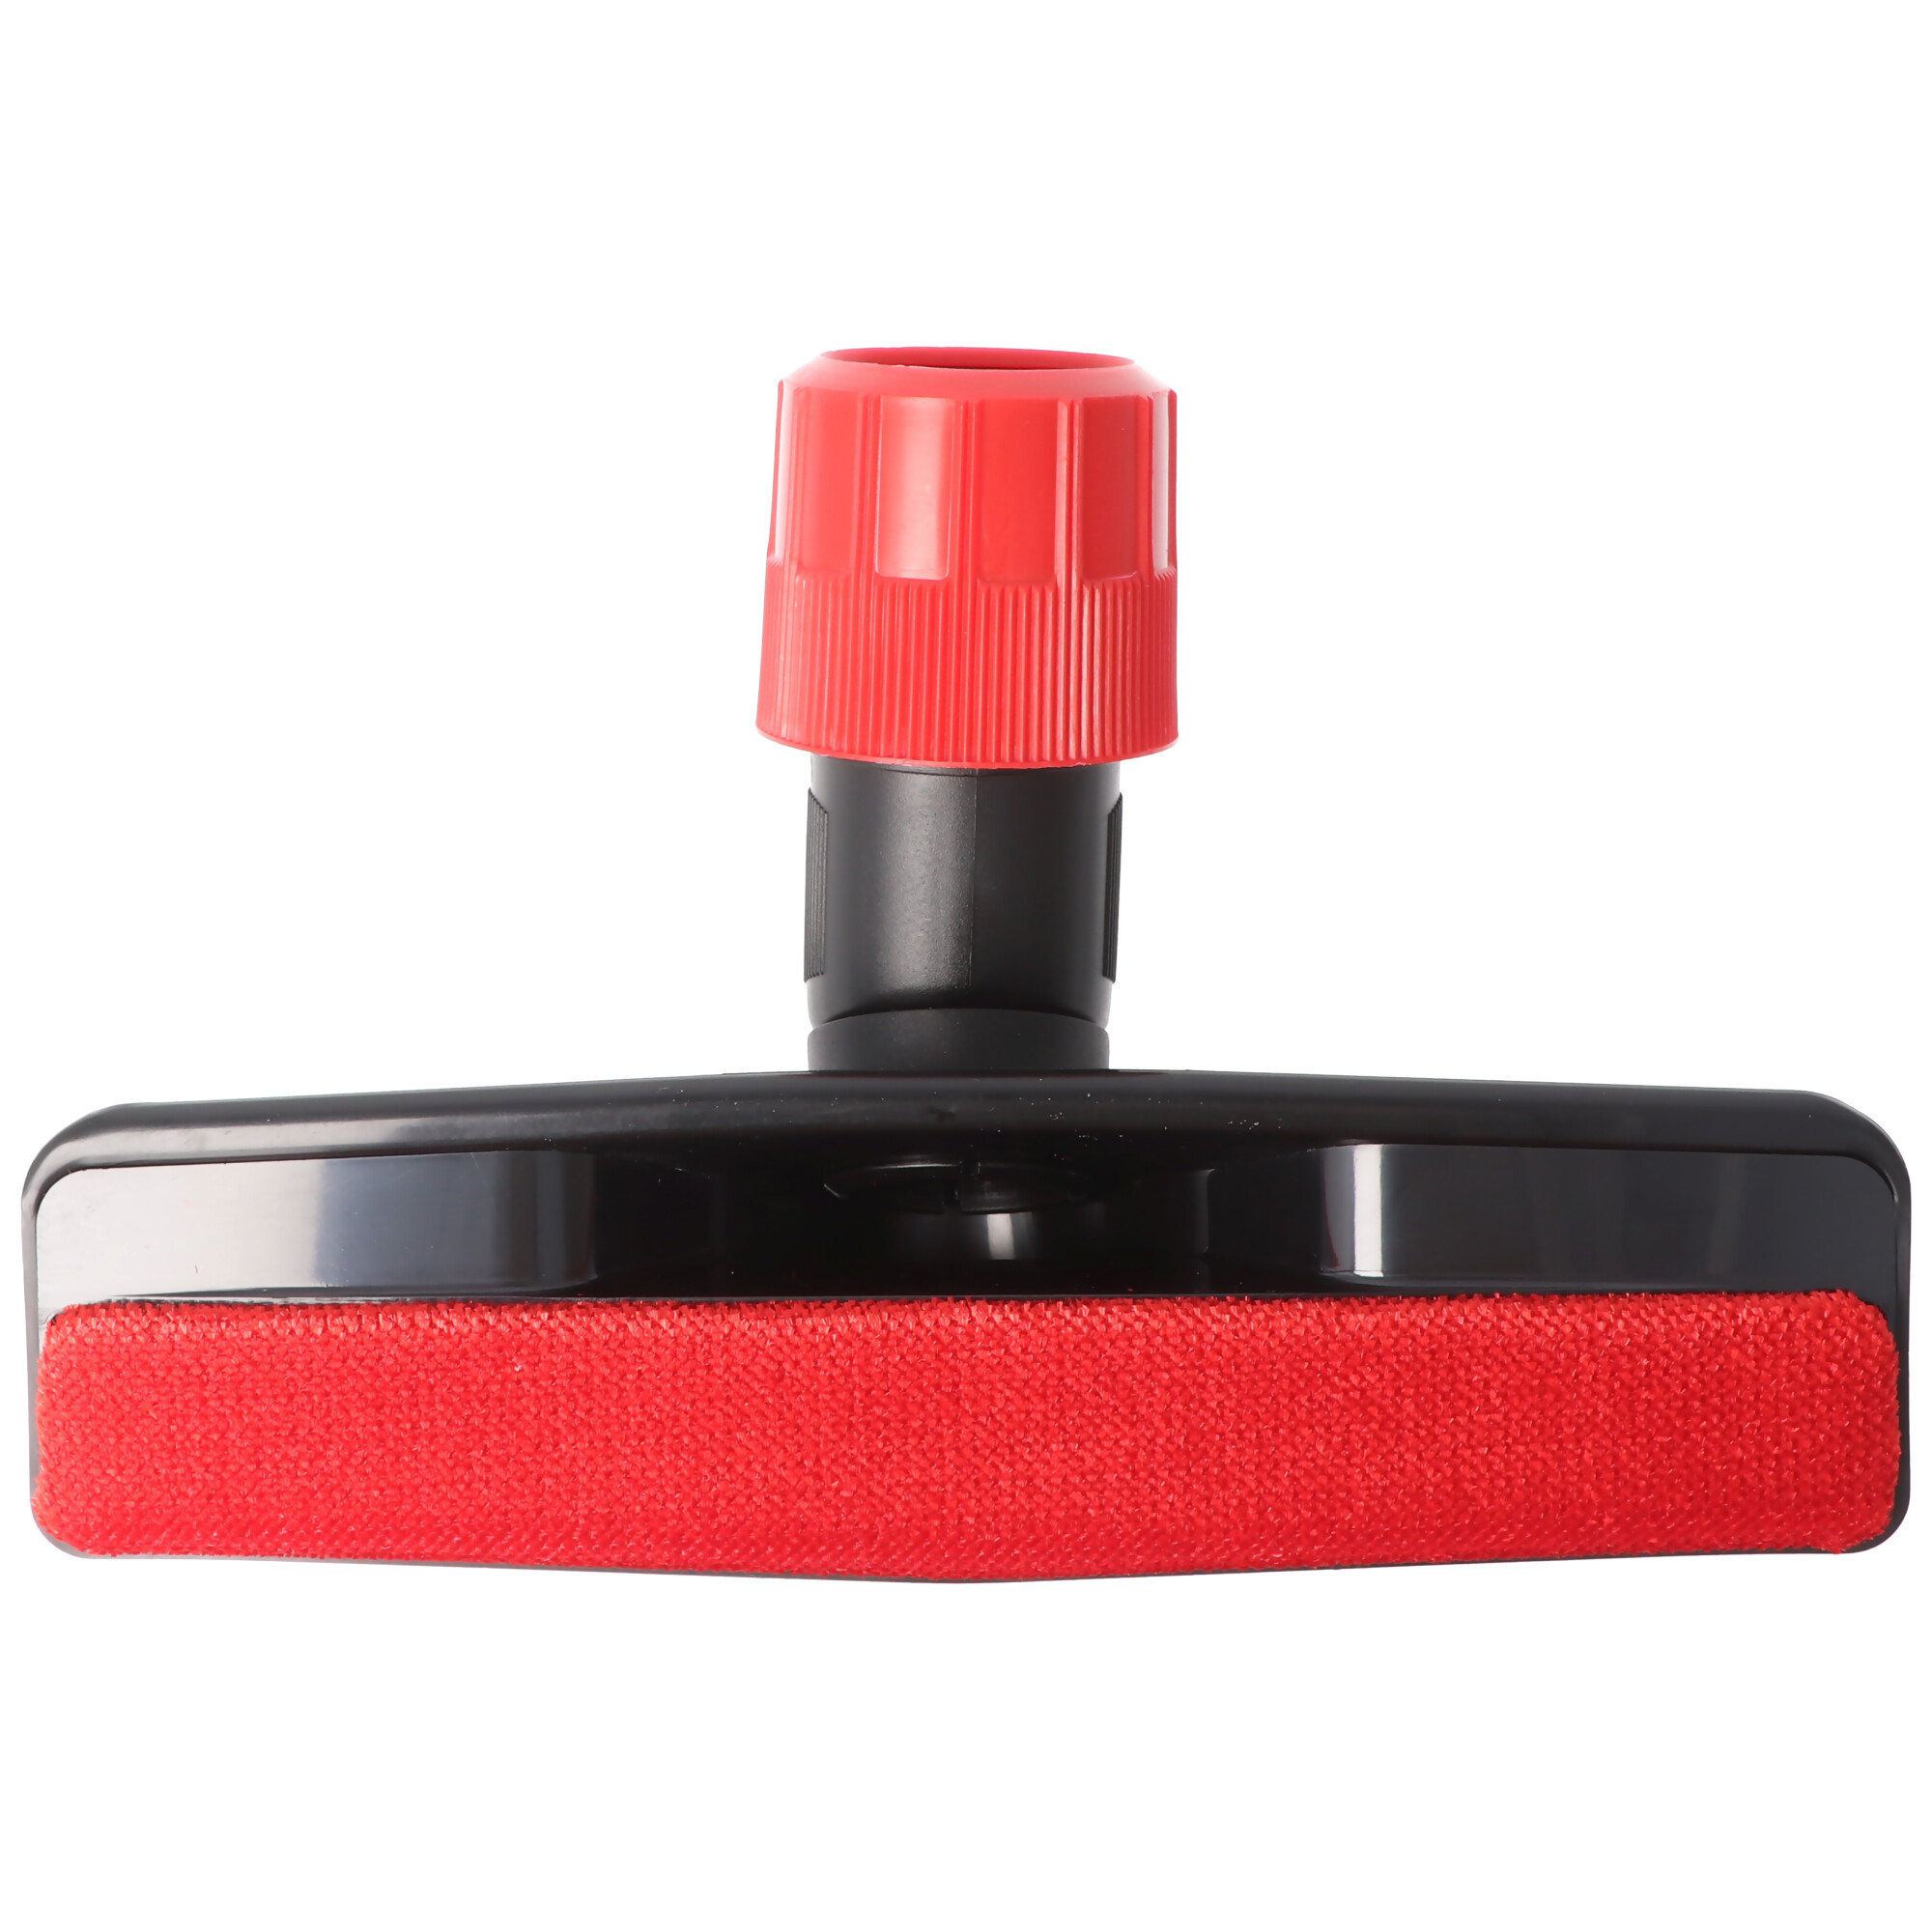 Tierhaar-Bodendüse für Staubsauger mit Rundanschluss 30mm, 32mm, 35mm, 37mm rot schwarz